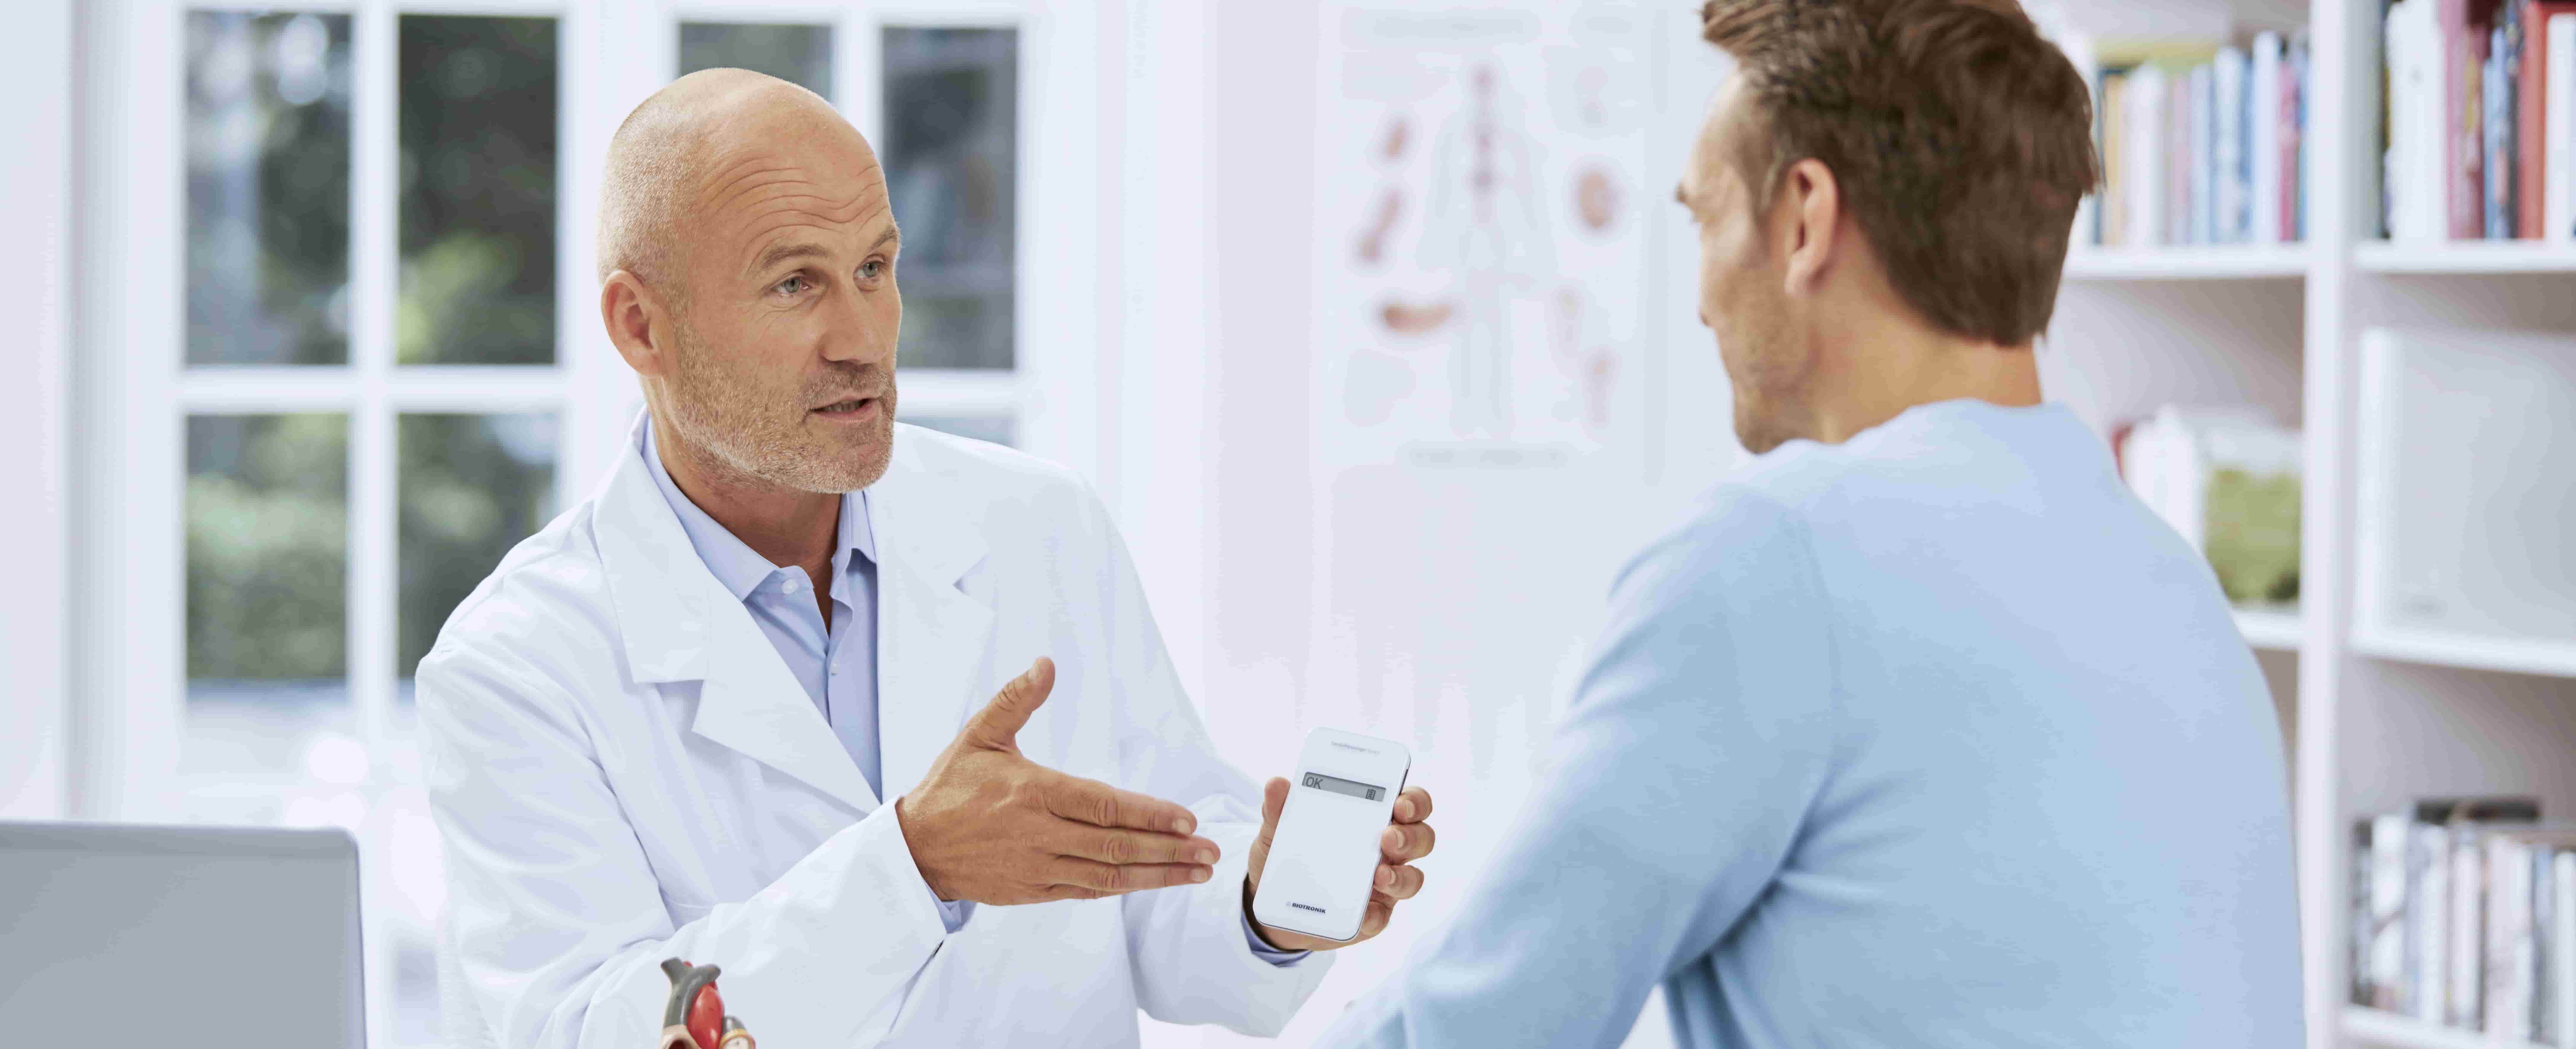 Foto de um médico branco em primeiro plano, sentado em ambiente hospitalar, mostrando a um homem branco, de perfil, um aparelho branco do tamanho de um pequeno smartphone